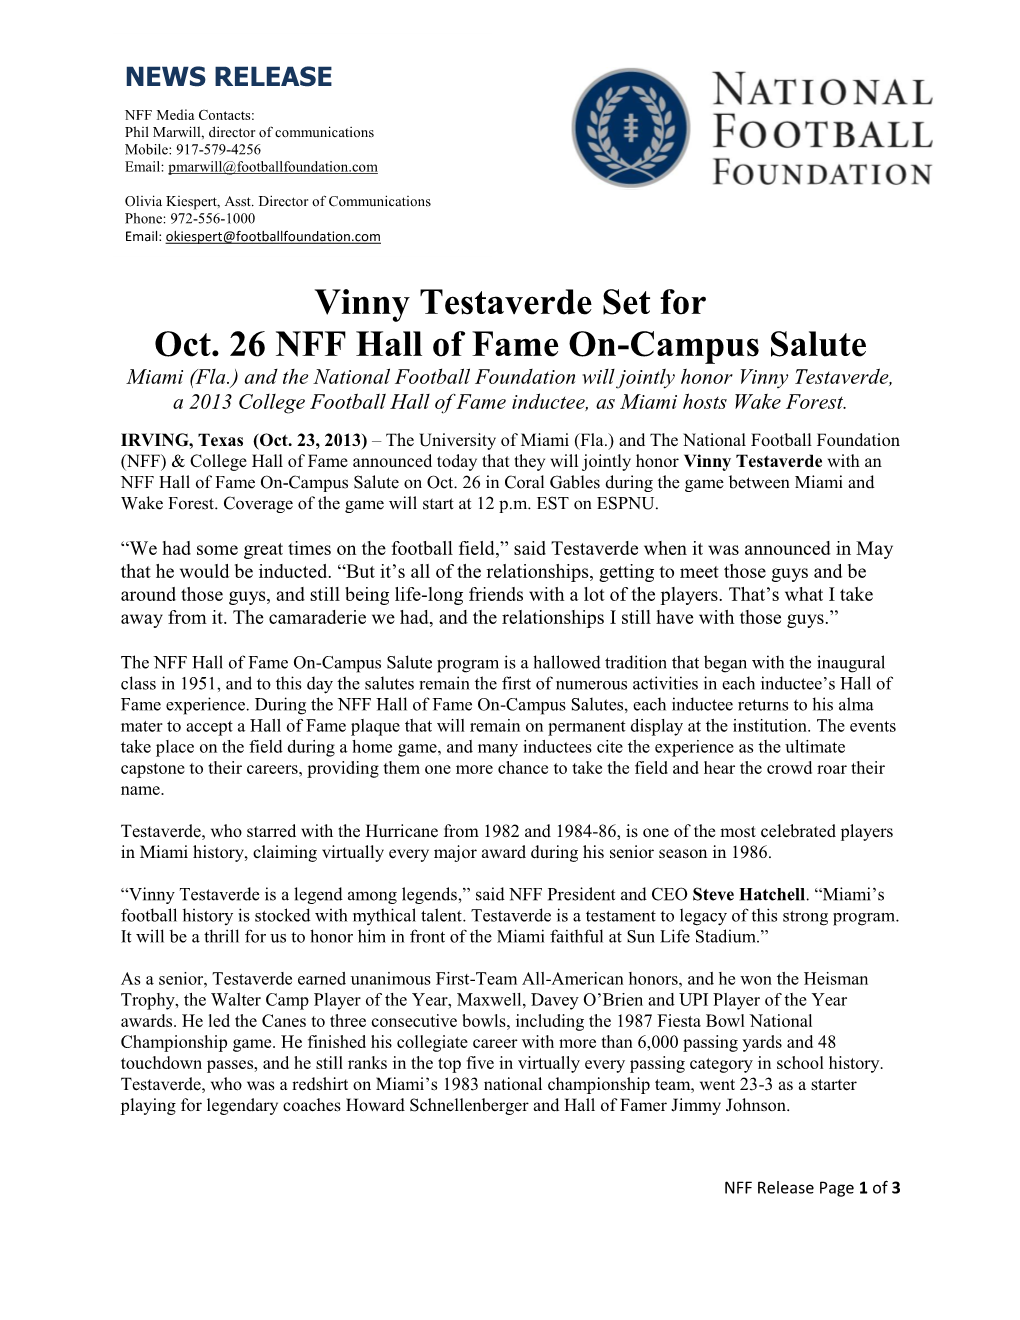 Vinny Testaverde Set for Oct. 26 NFF Hall of Fame On-Campus Salute